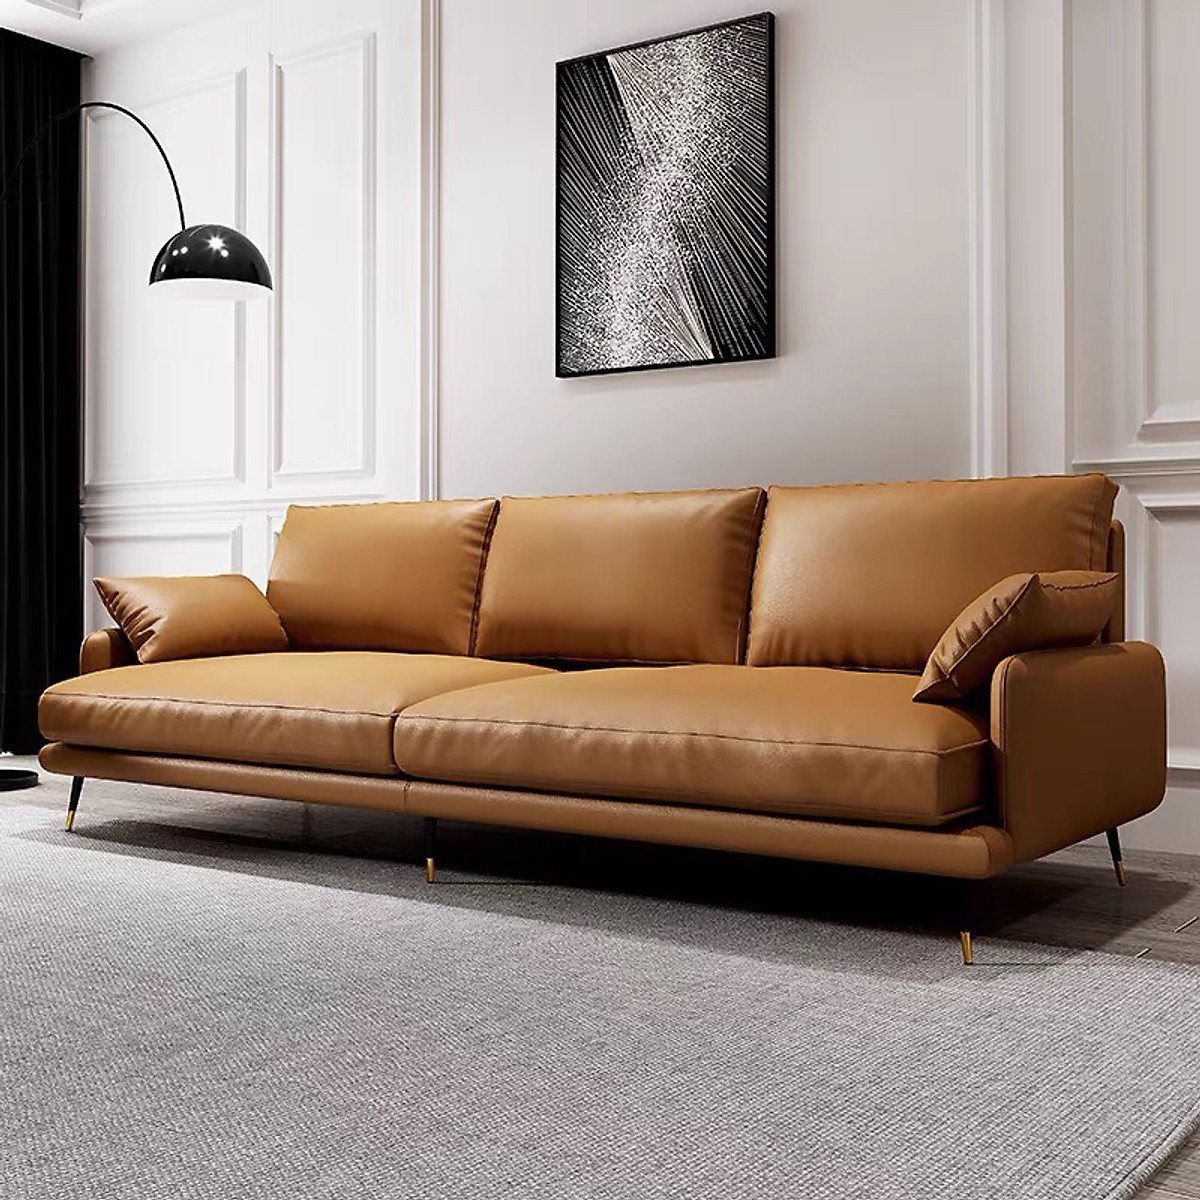 Ghế sofa băng dài phòng khách: Ghế Sofa băng dài phòng khách là lựa chọn hoàn hảo để thư giãn sau một ngày dài làm việc. Với thiết kế sang trọng và tiện nghi, ghế sofa băng dài phòng khách sẽ phù hợp với mọi không gian sống trong gia đình bạn.